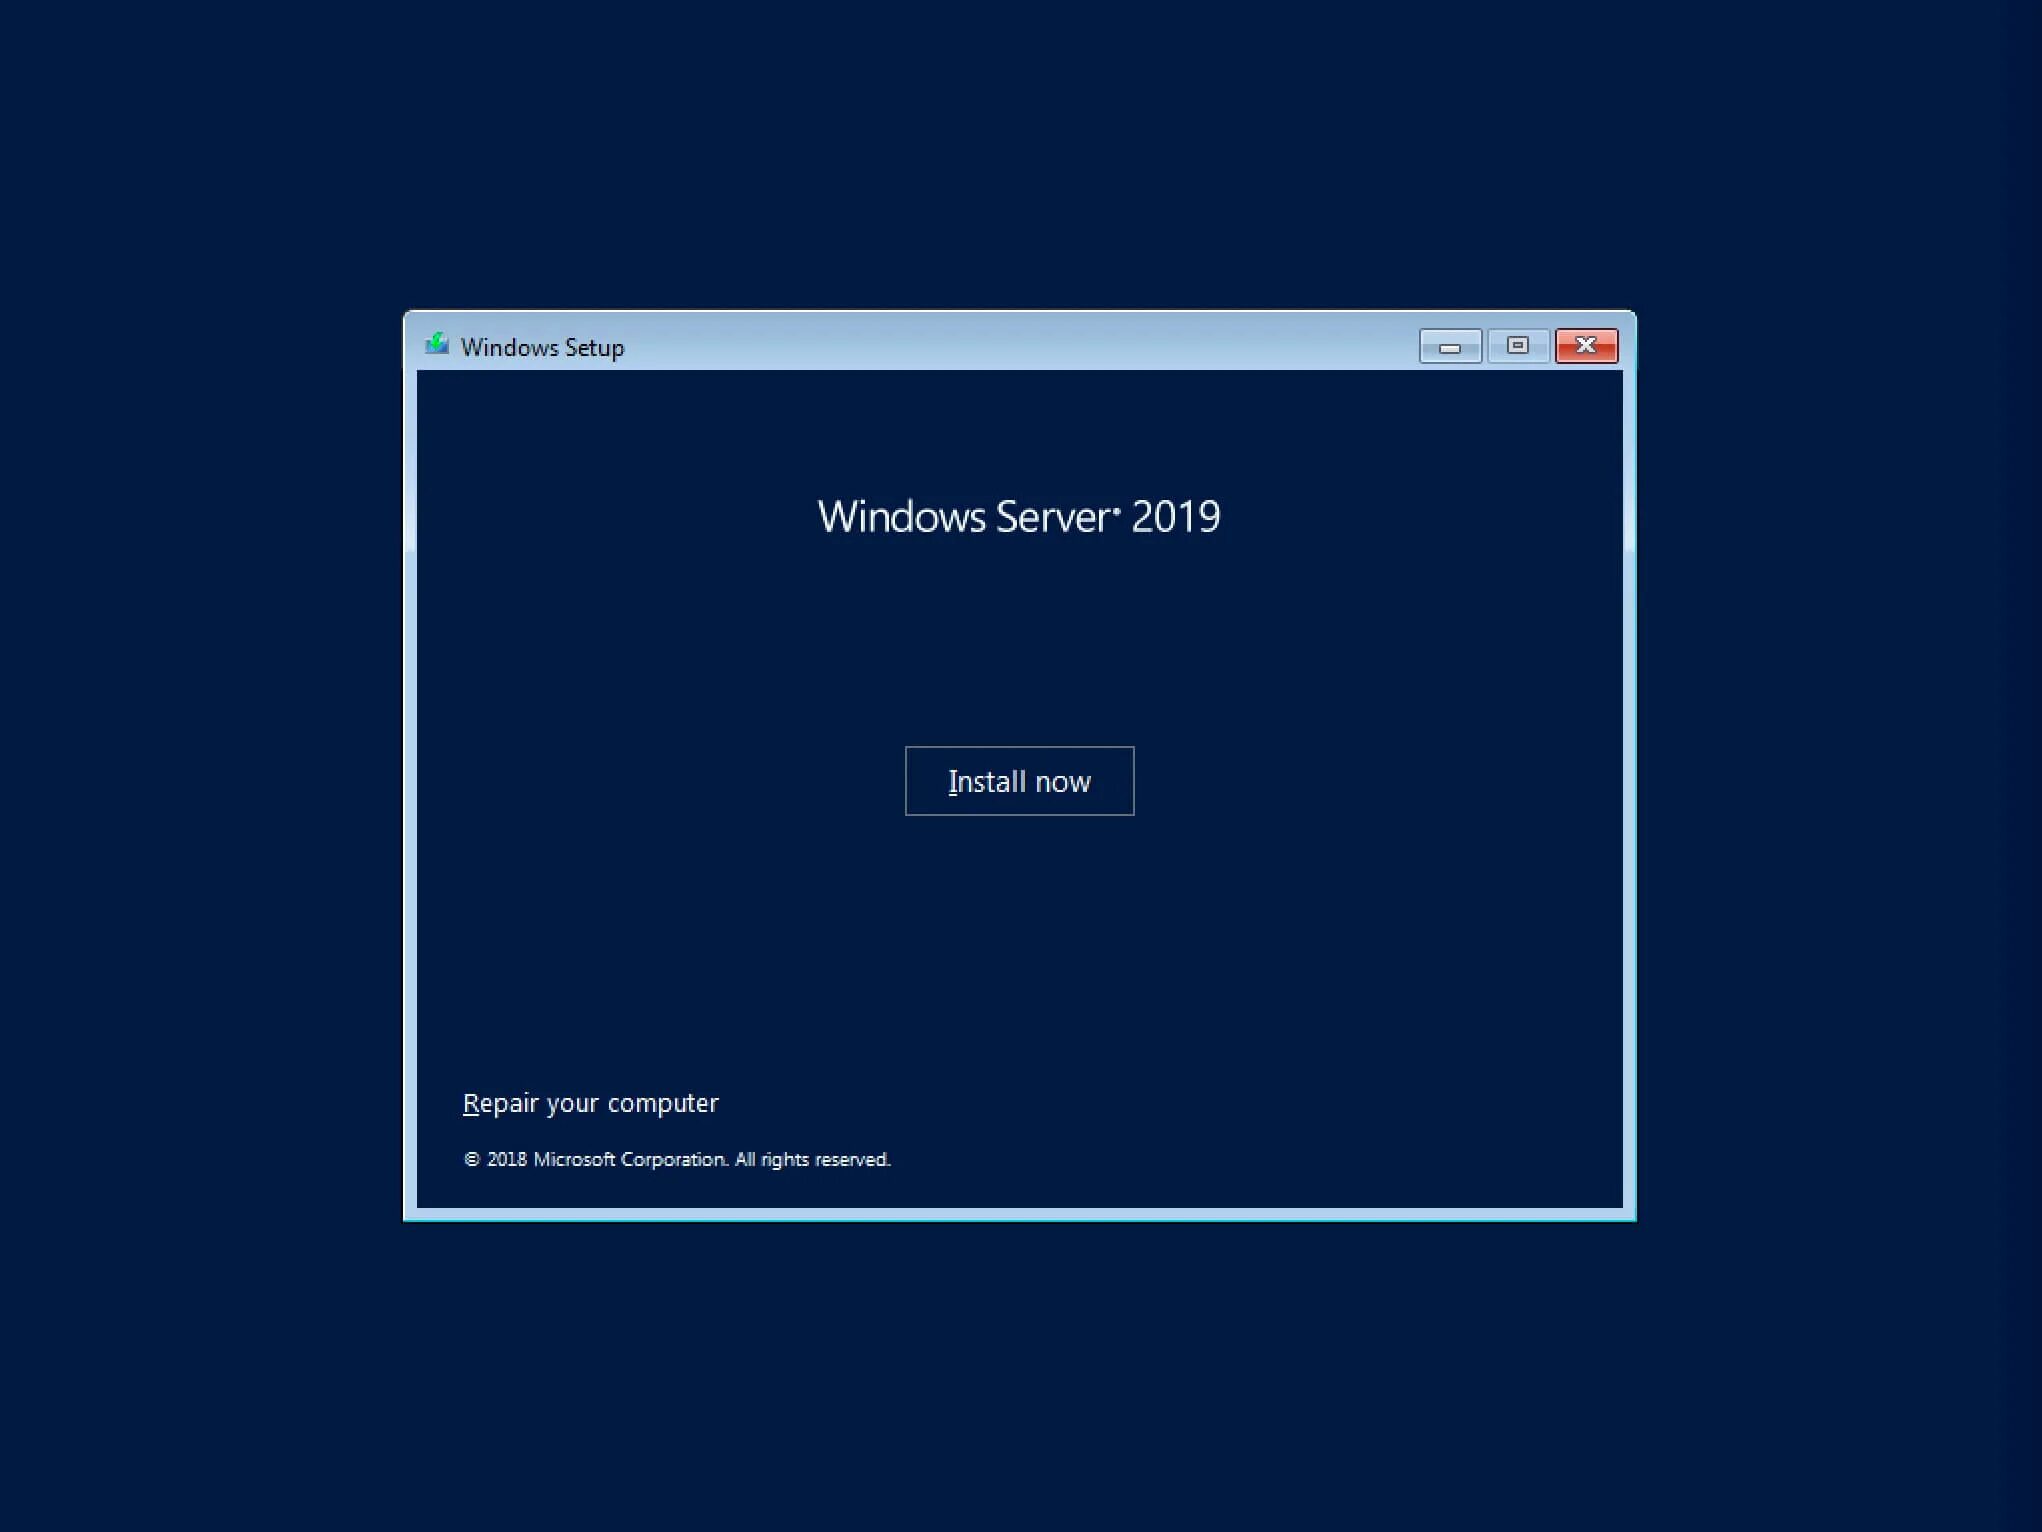 ОС Windows Server 2019. Установка виндовс сервер 2019. Установка Windows Server 2019. Окно установки Windows Server 2019.